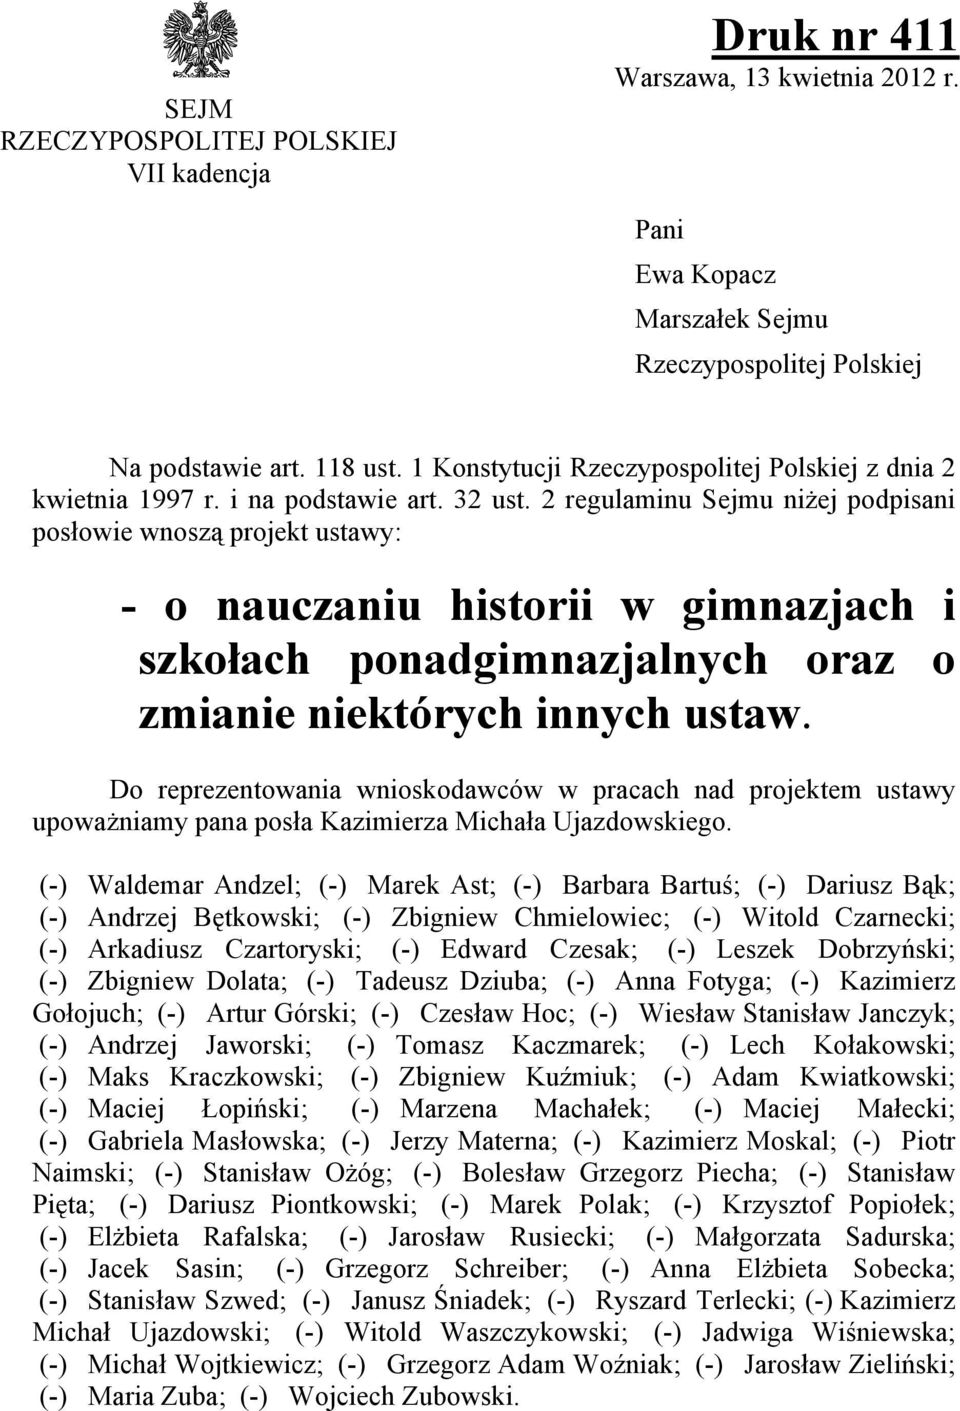 2 regulaminu Sejmu niżej podpisani posłowie wnoszą projekt ustawy: - o nauczaniu historii w gimnazjach i szkołach ponadgimnazjalnych oraz o zmianie niektórych innych ustaw.